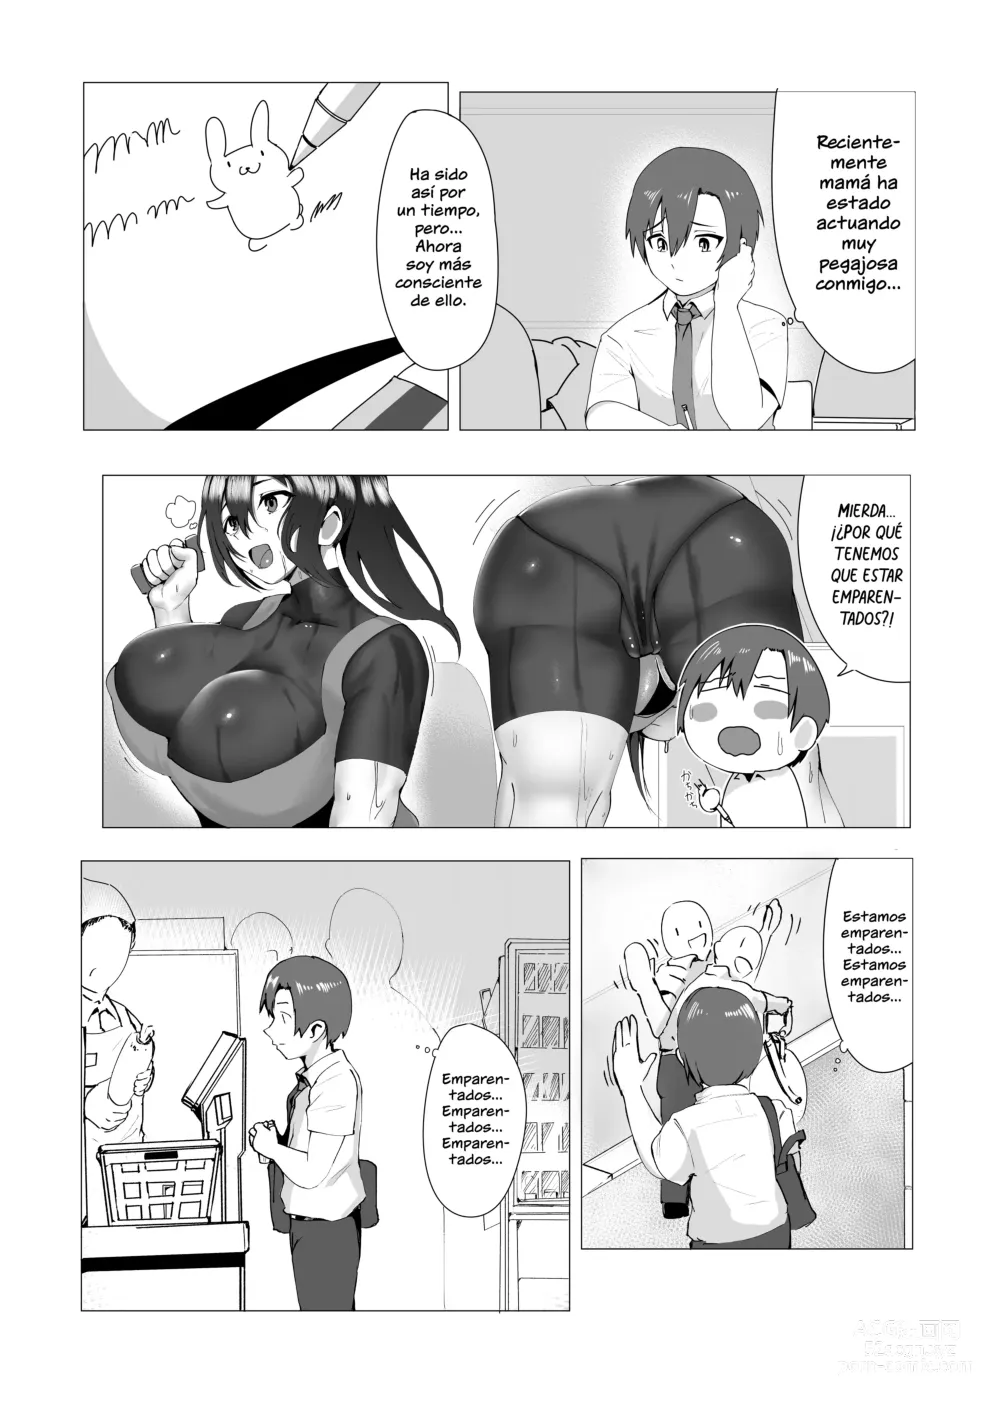 Page 6 of doujinshi ¿Estas bien con mami?